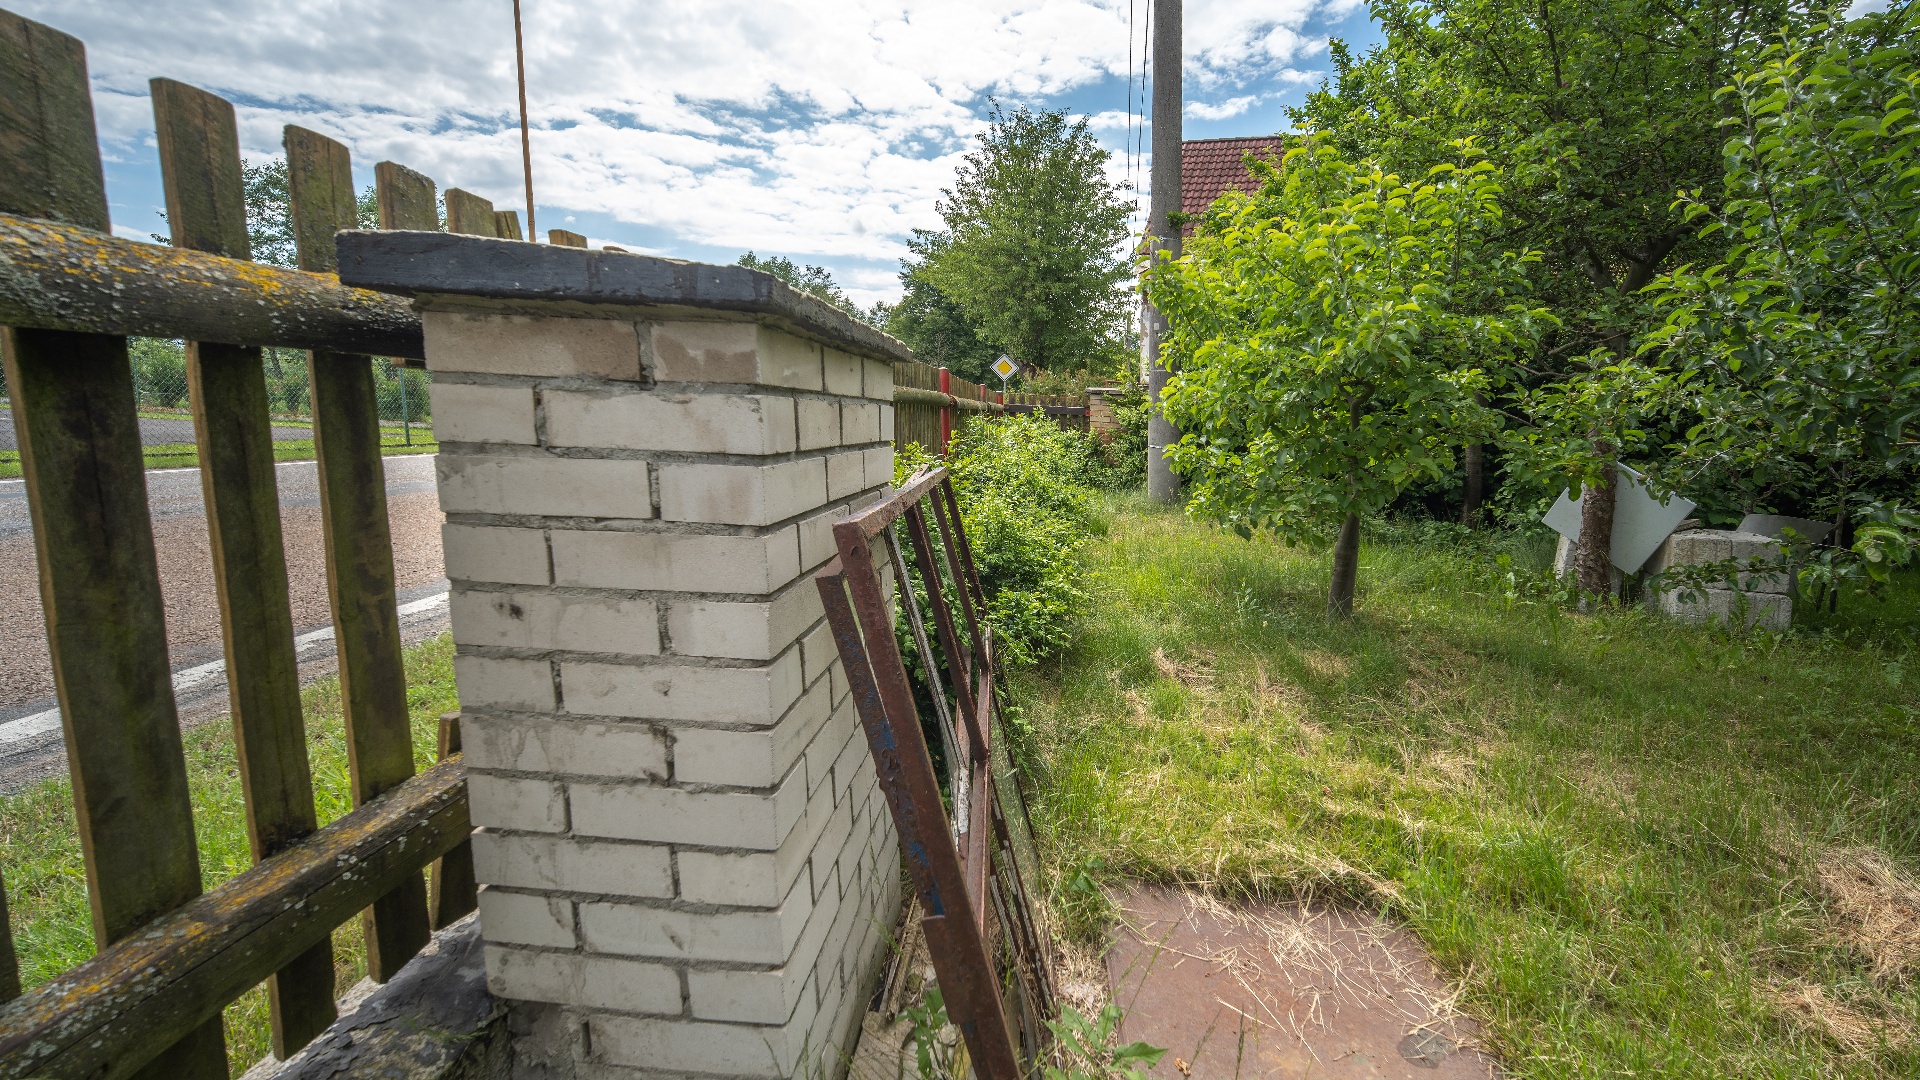 Prodej chalupy 100 m2 v obci Kocelovice u města Lnáře, nedaleko Blatné, k dokončení a s velkým pozemkem 951 m2.